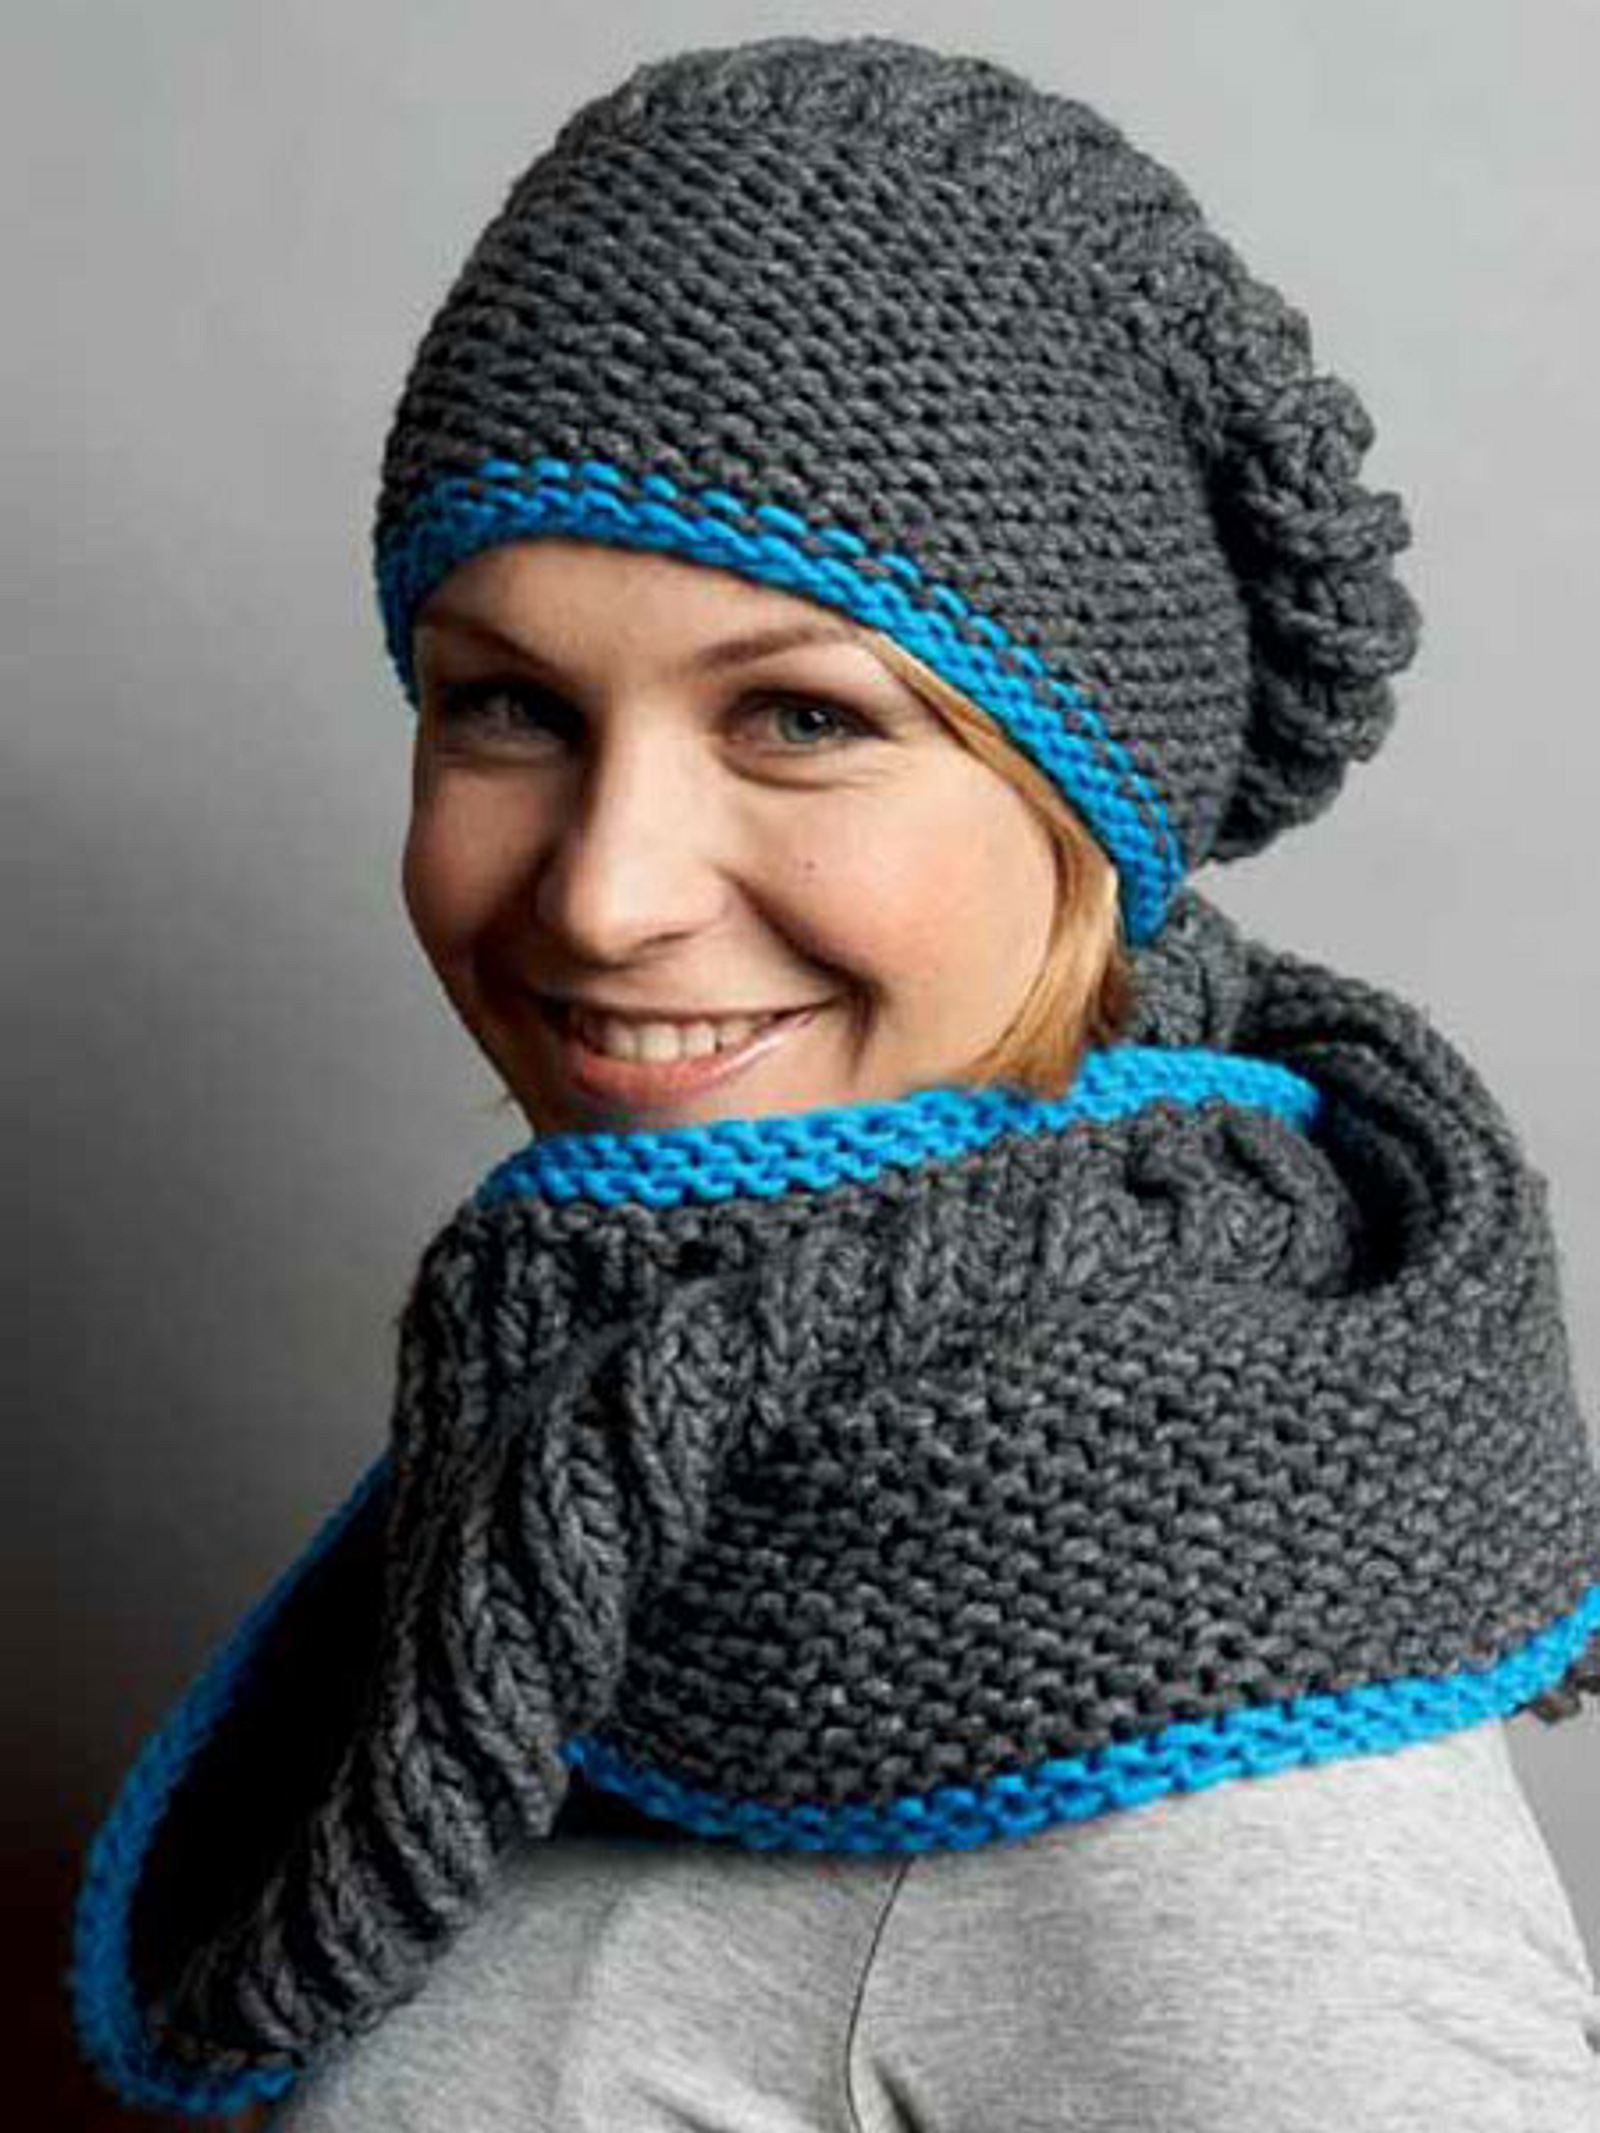 Anleitung: Loop-Schal und passende Mütze stricken | Wunderweib